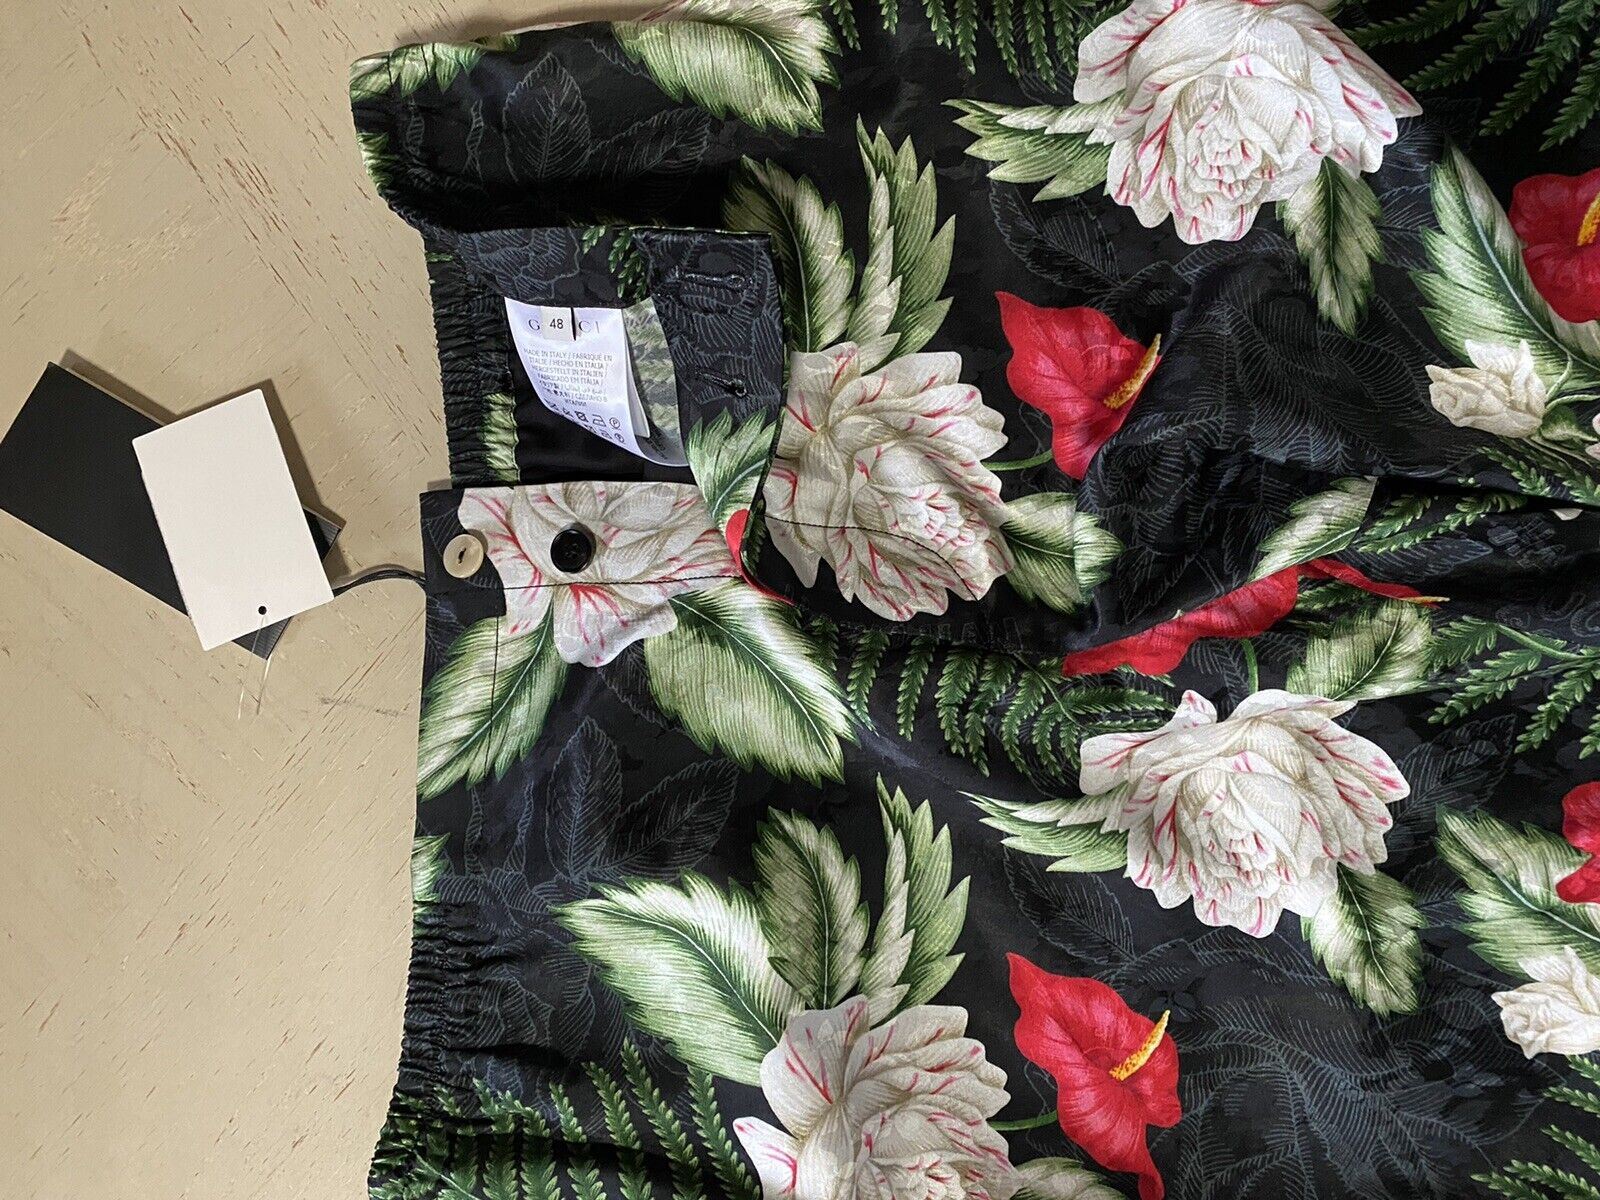 СЗТ $980 Gucci Мужские шорты Gucci Soul Monogram черного/зеленого/разного цвета 28 US/44